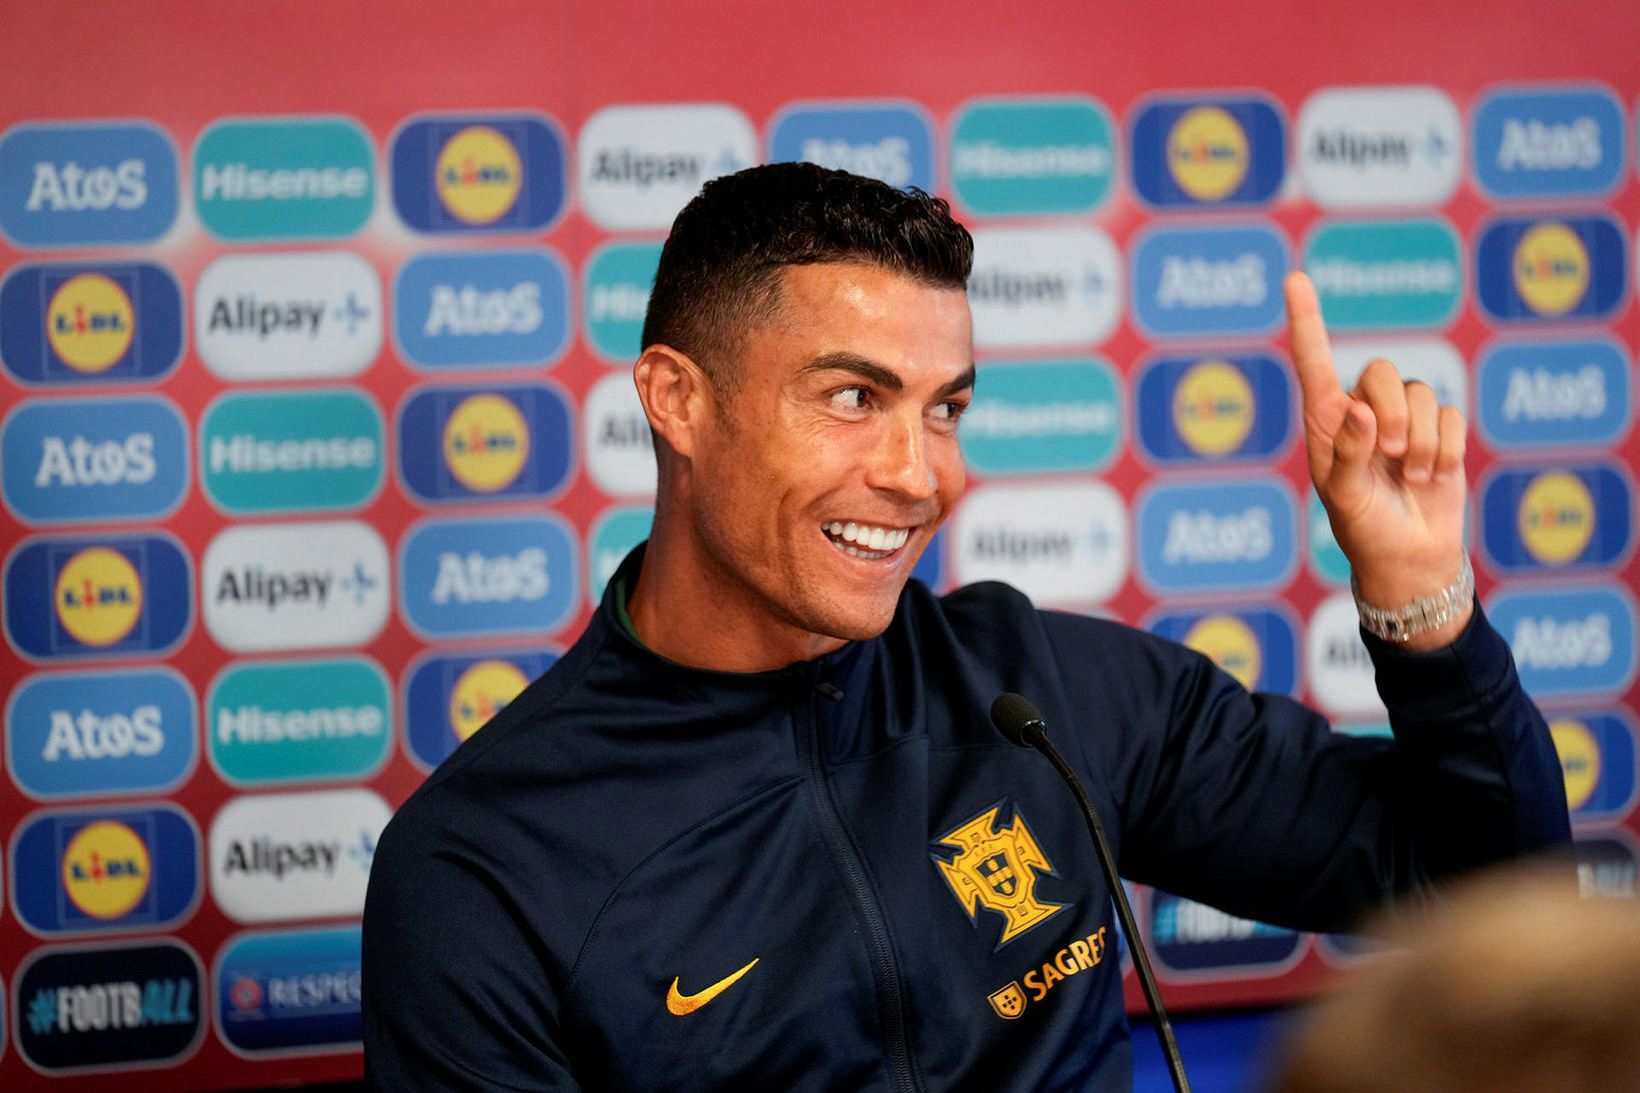 Cristiano Ronaldo sat fyrir svörum í Laugardalnum í dag.